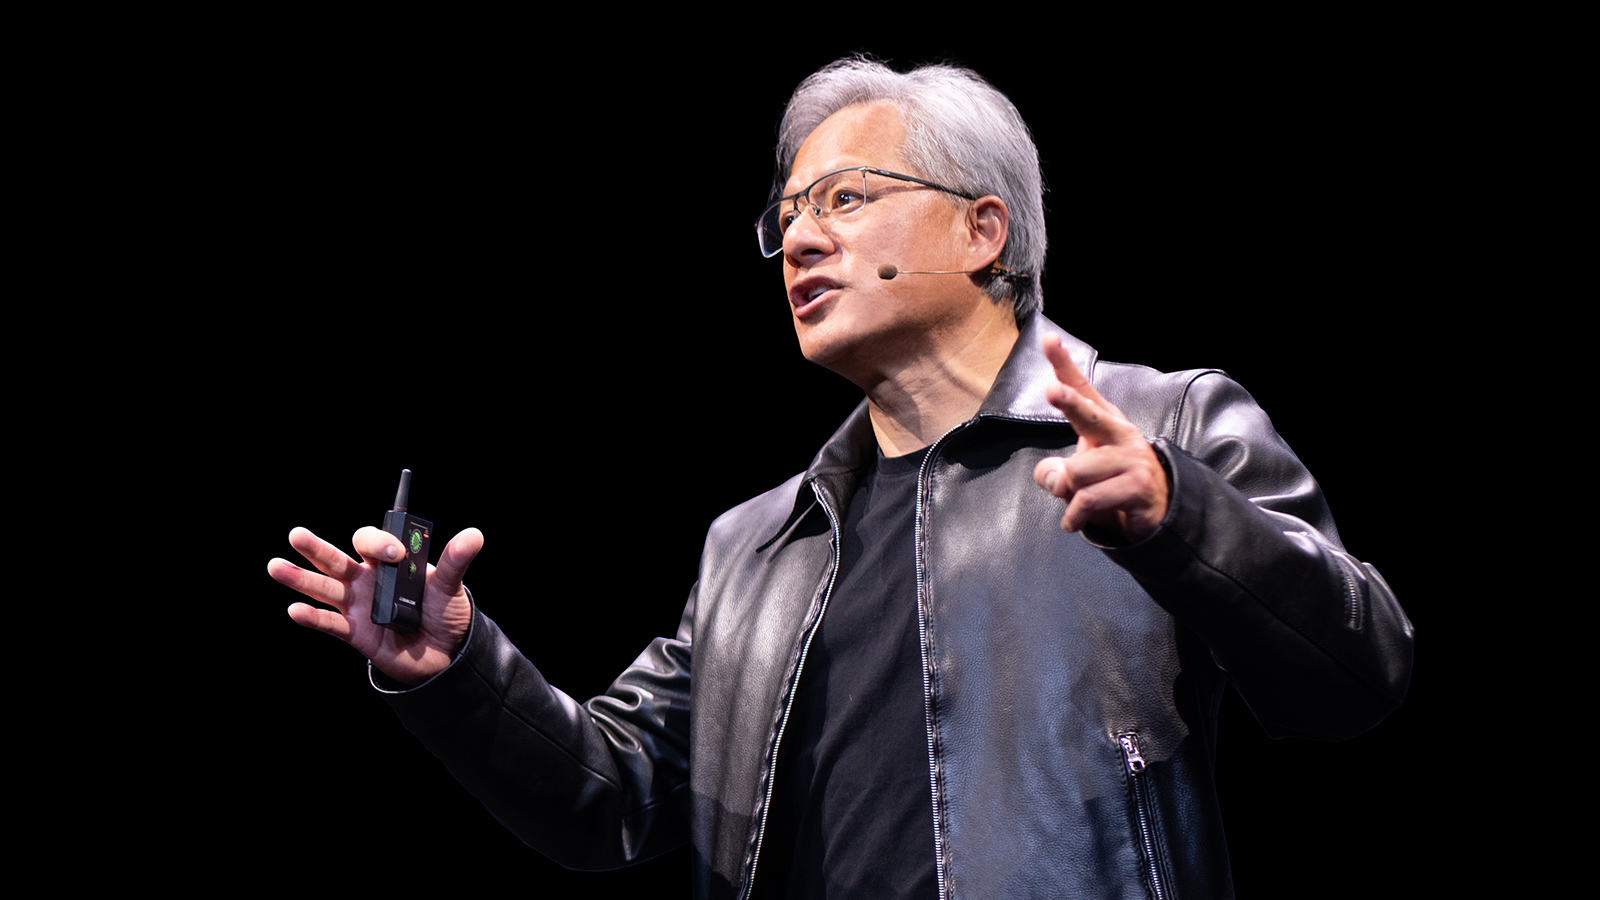 NVIDIAâs Jensen Huang to Unveil Latest Breakthroughs in Accelerated Computing, Generative AIÂ and Robotics